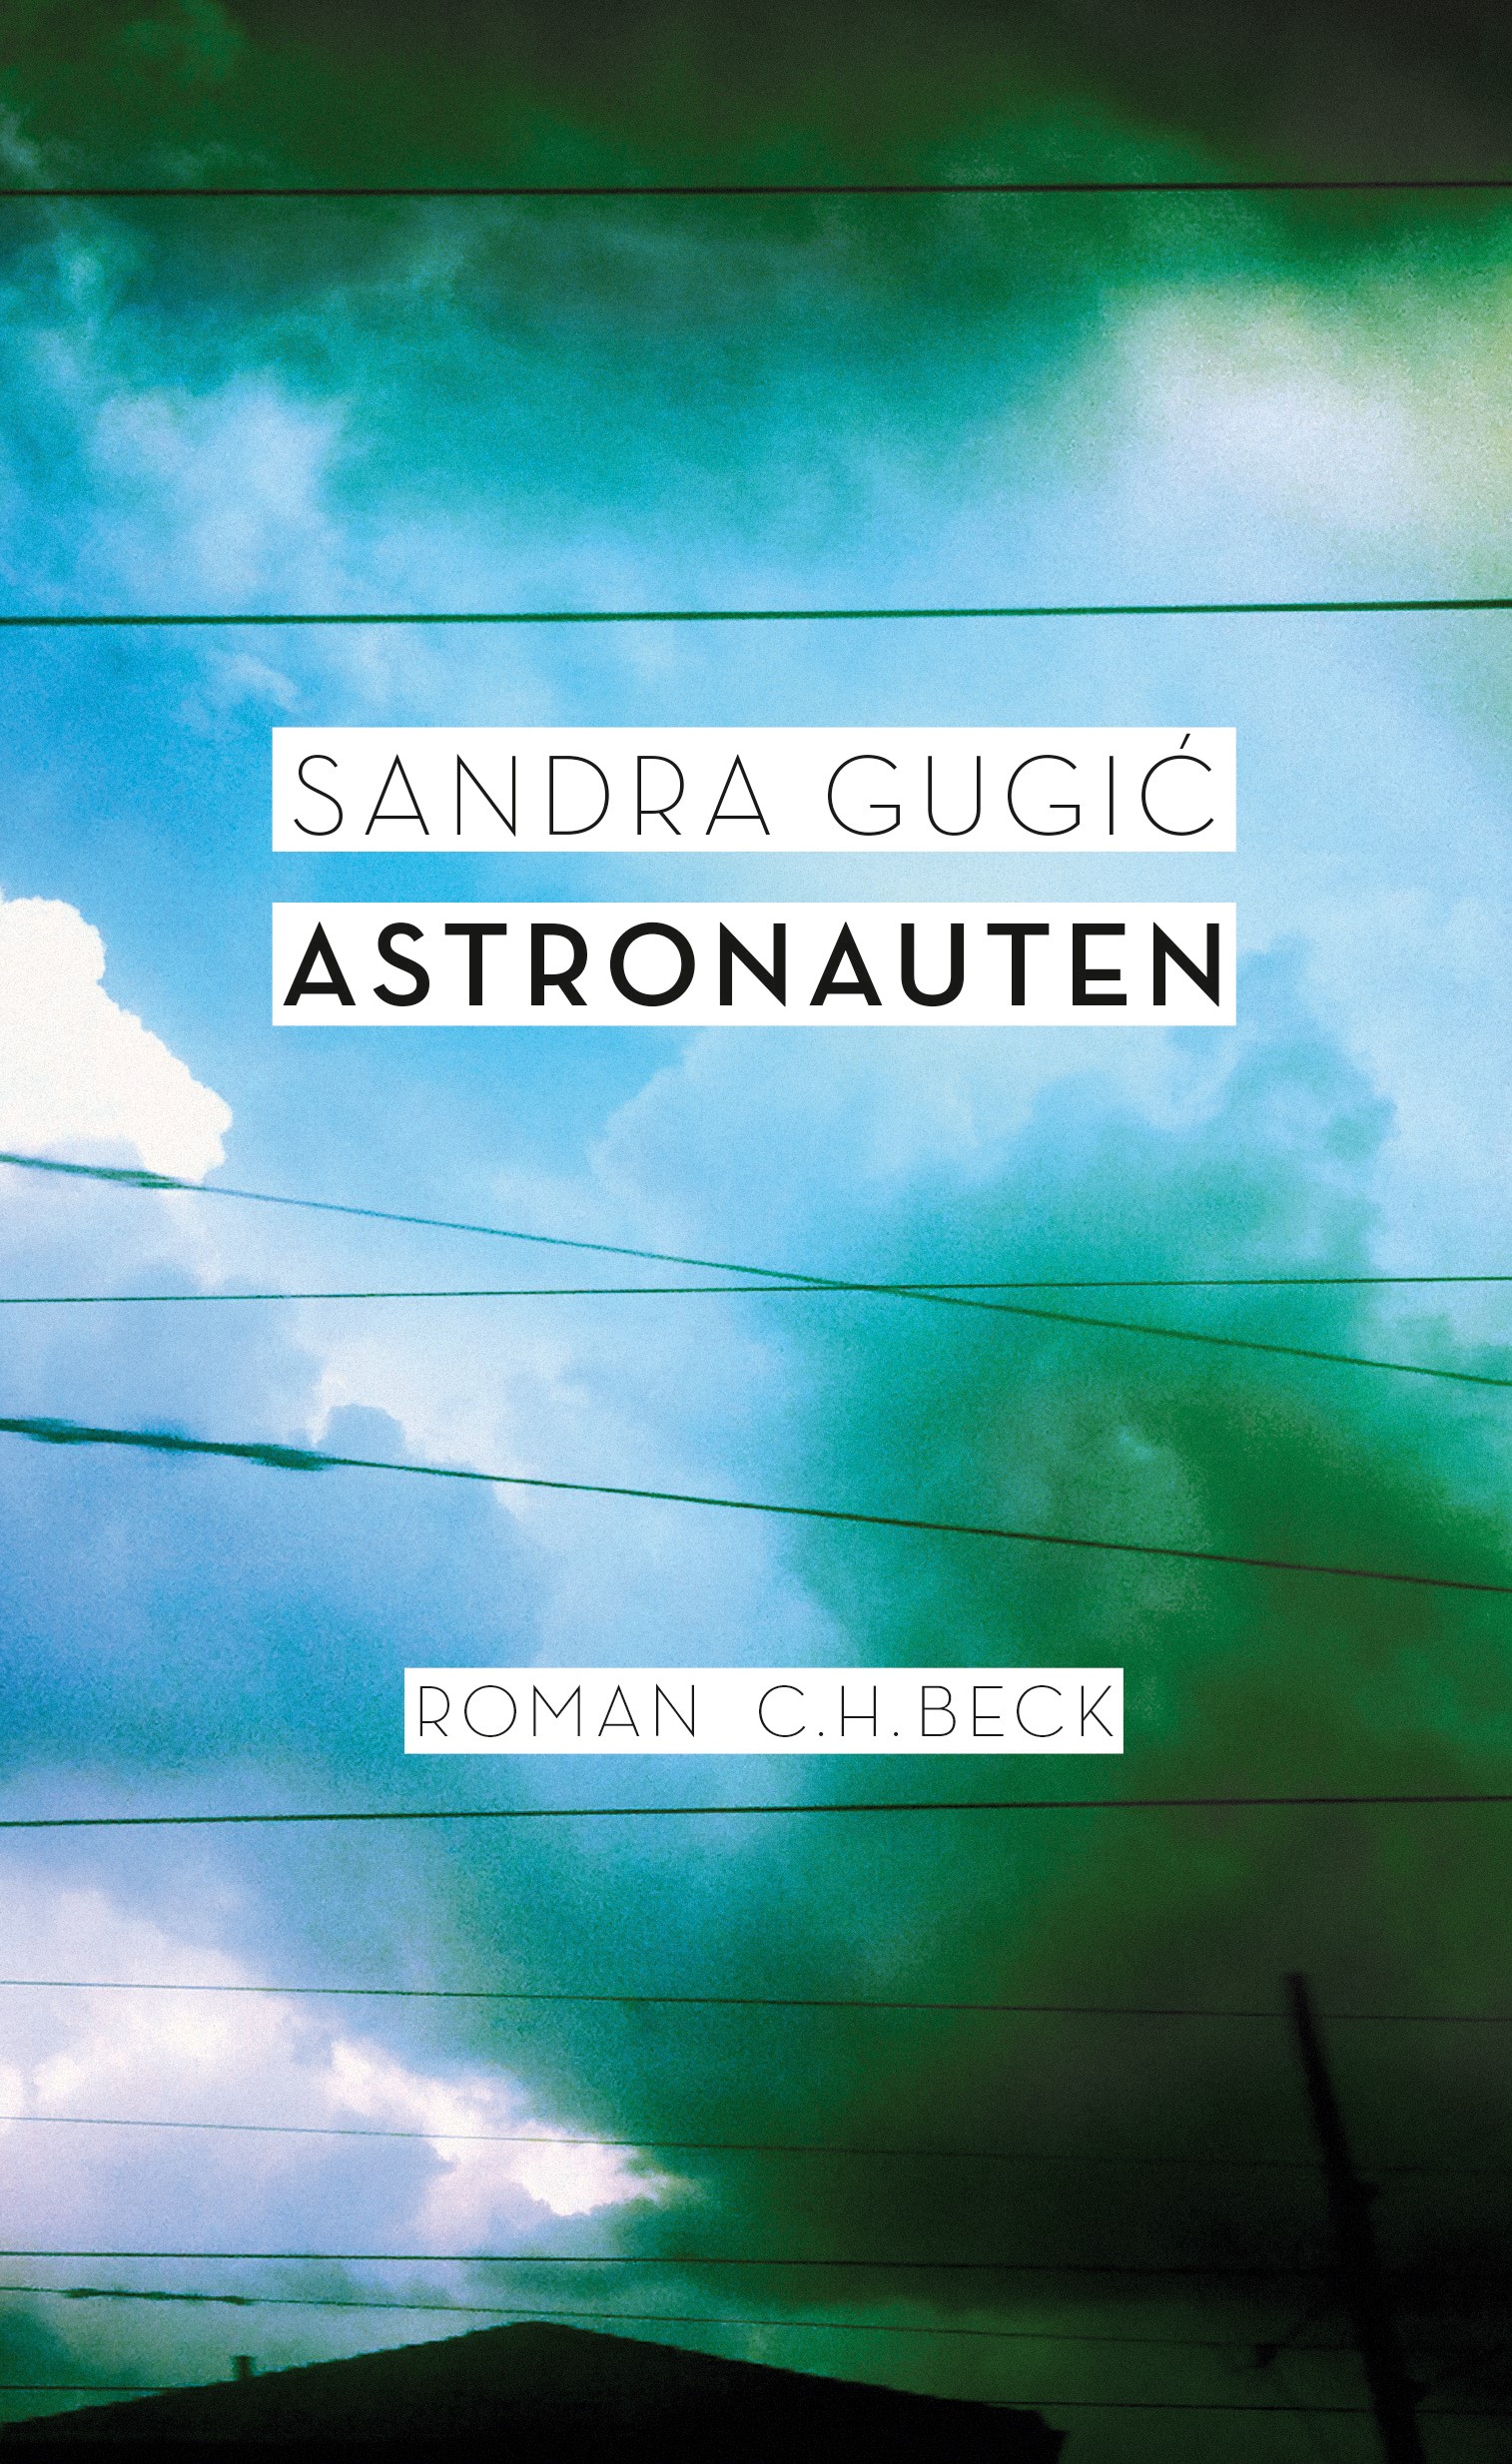 Cover: Gugic, Sandra, Astronauten